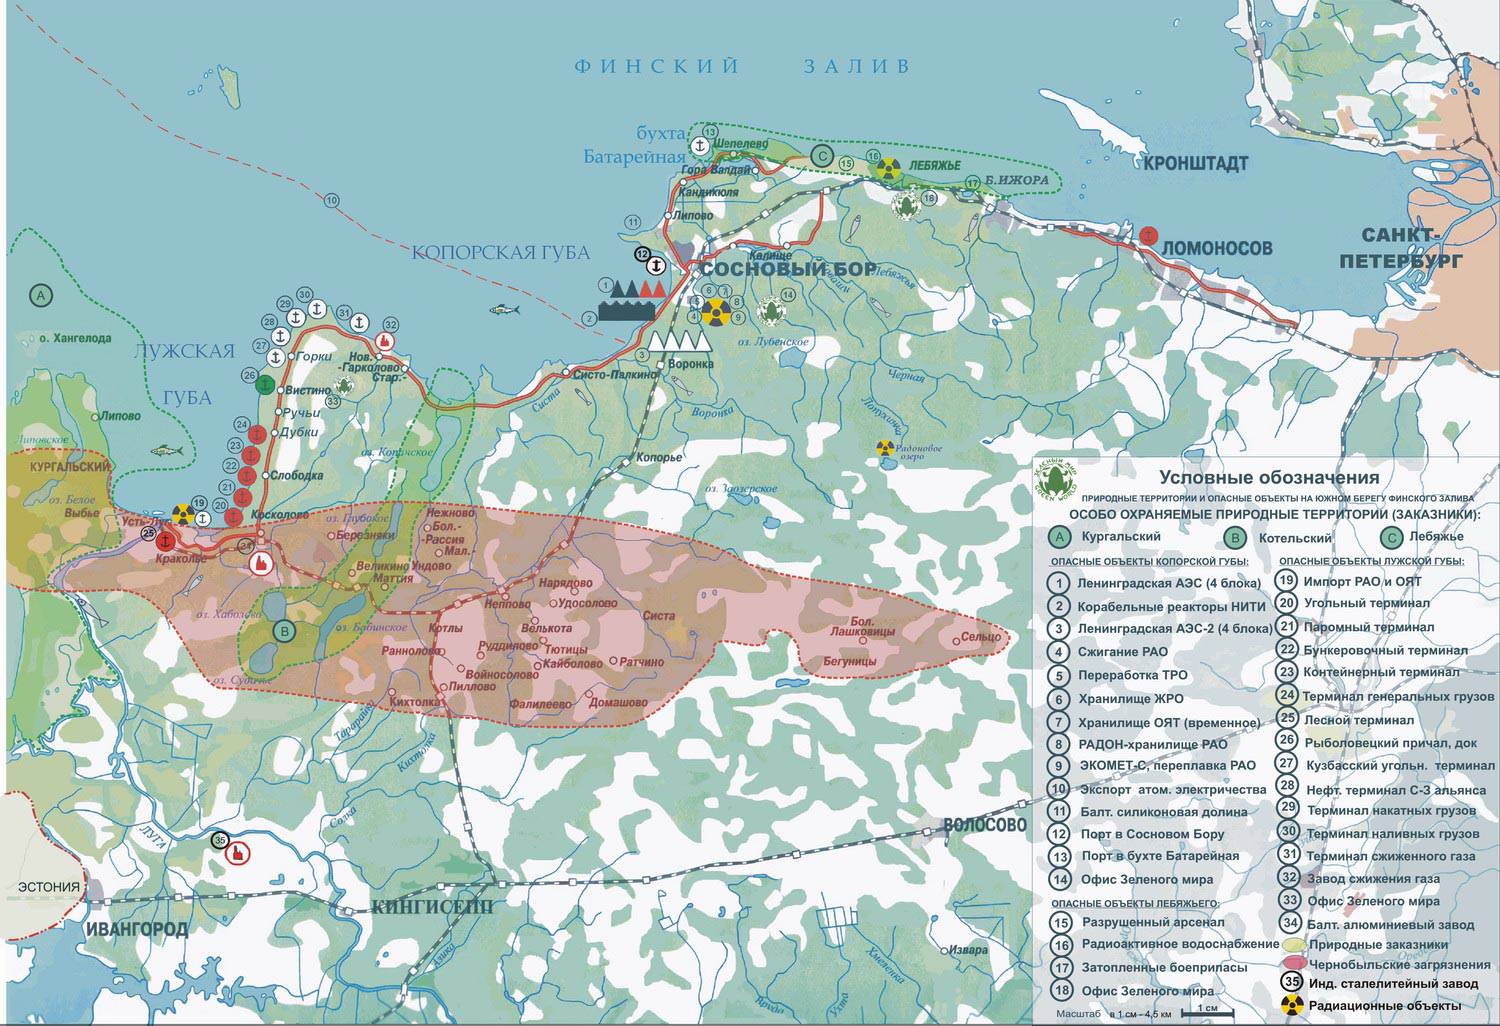 Опасные объекты и природные ценности южного побережья Финского залива